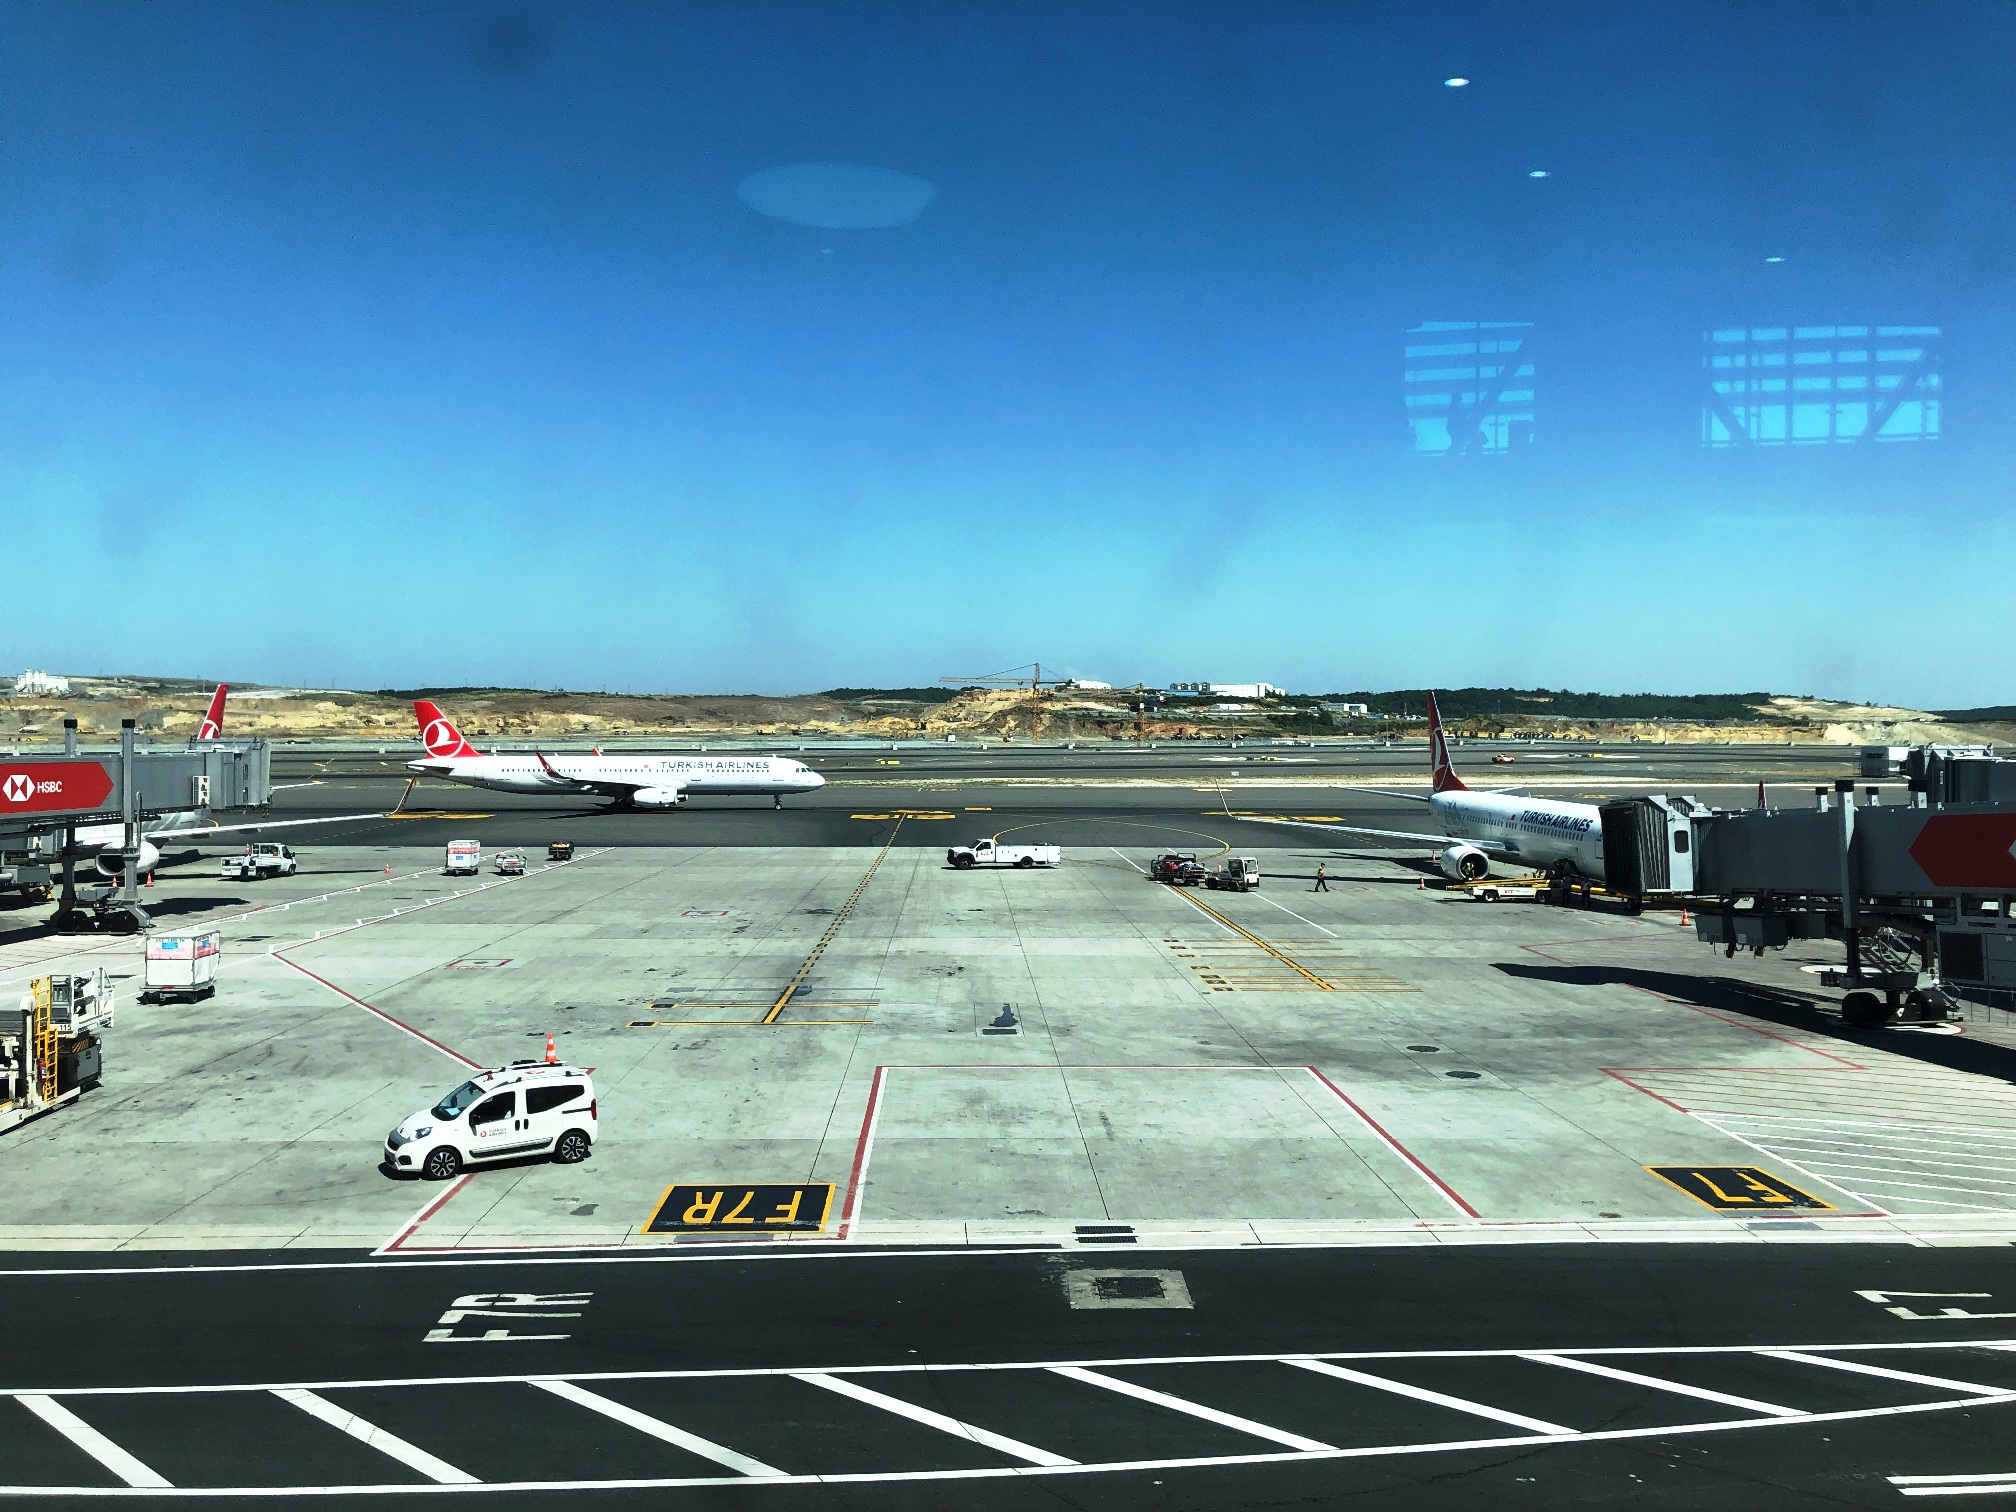 İstanbul Yeni Havalimanı’ndaki Uzun “Taxi” Süreleri